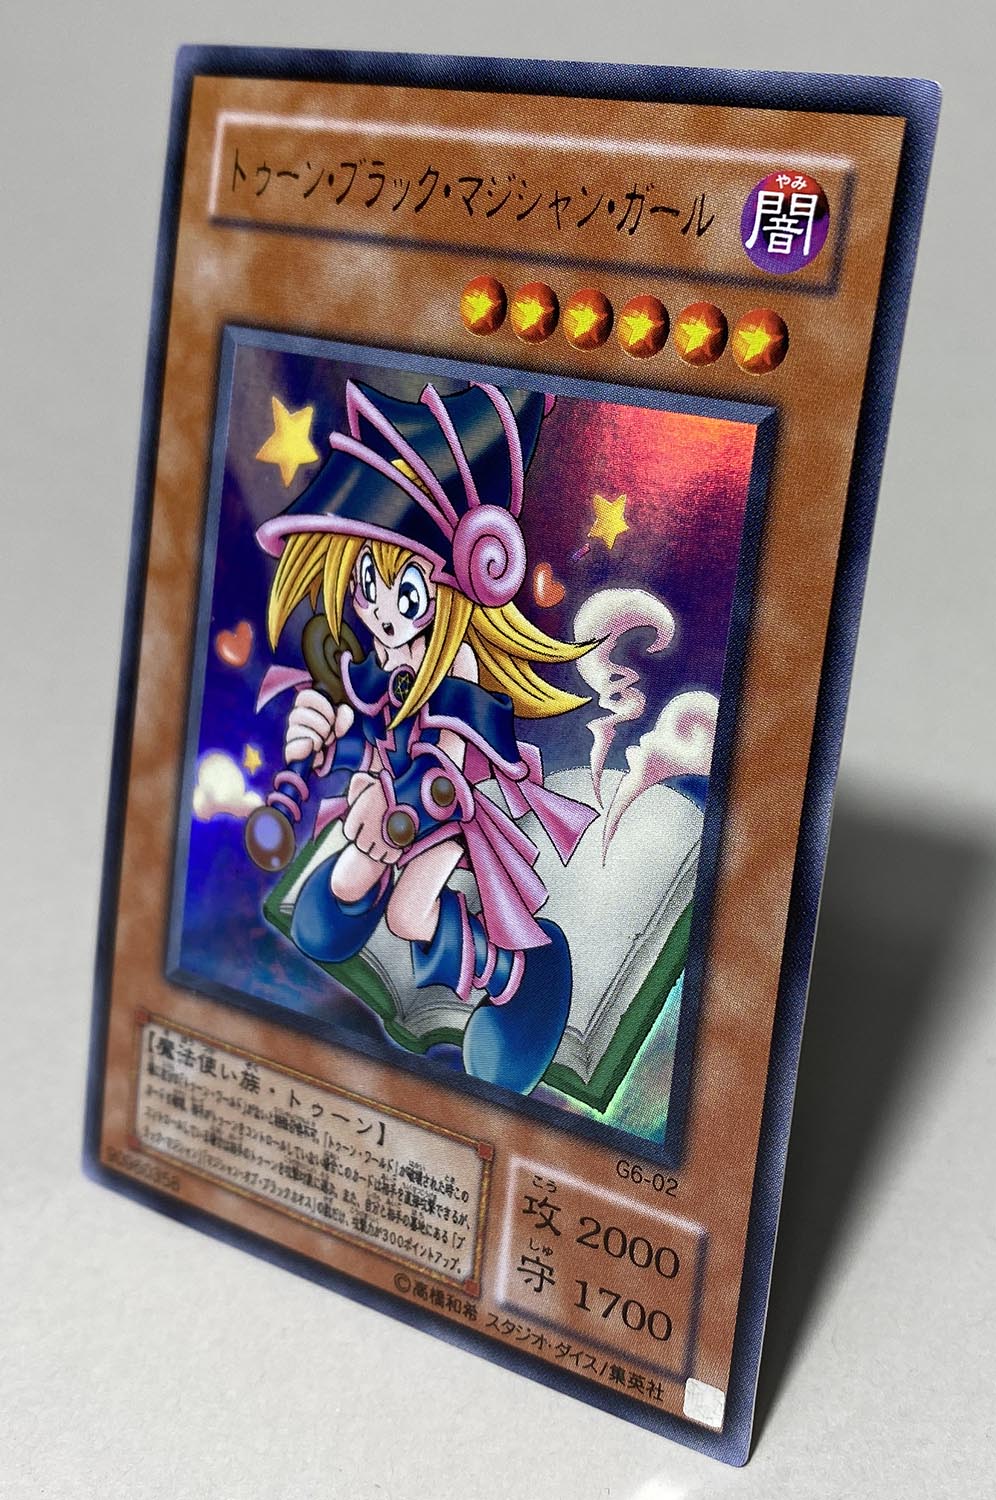 遊戯王カード トゥーン・ブラック・マジシャン・ガール G6-02 ウルトラ 